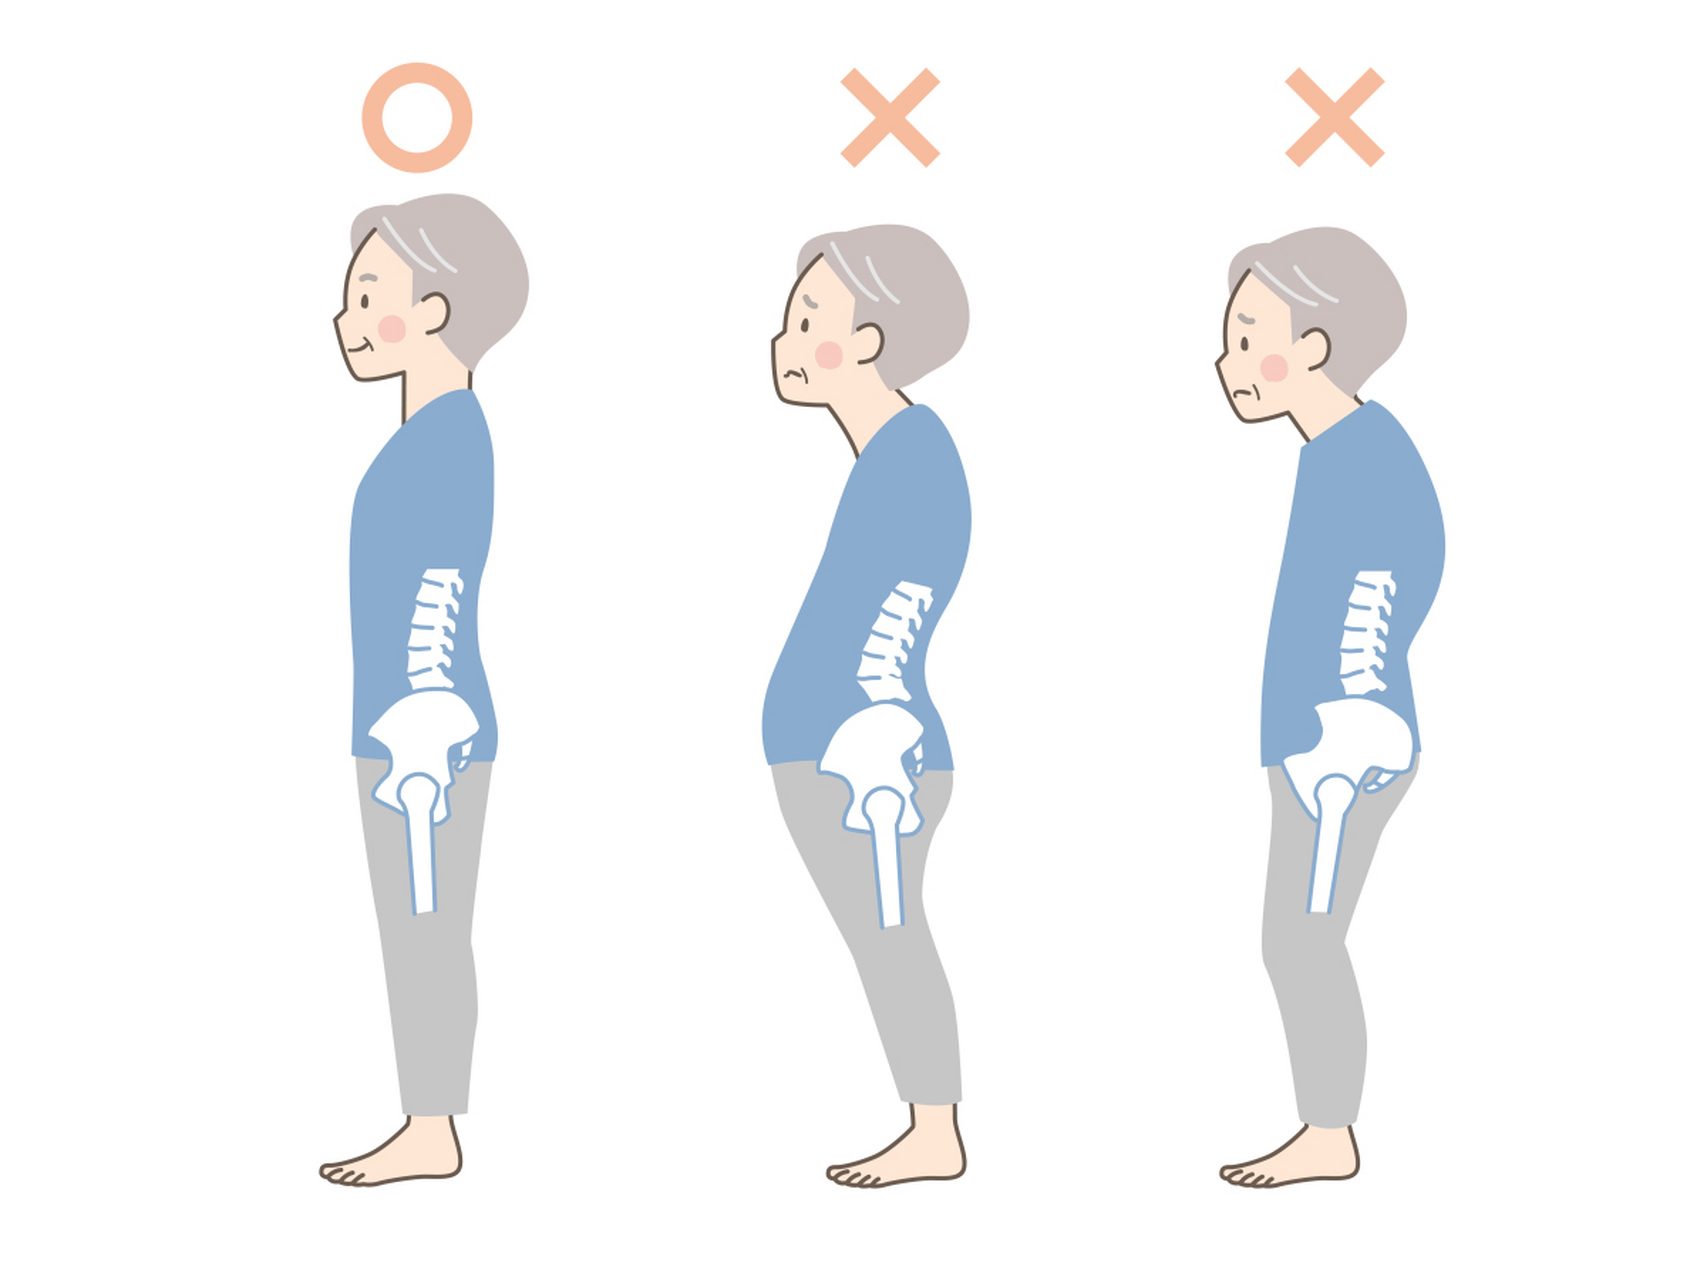 骨盆前倾是指骨盆向前倾斜的姿势,通常会导致腰部挺直或者过度弯曲